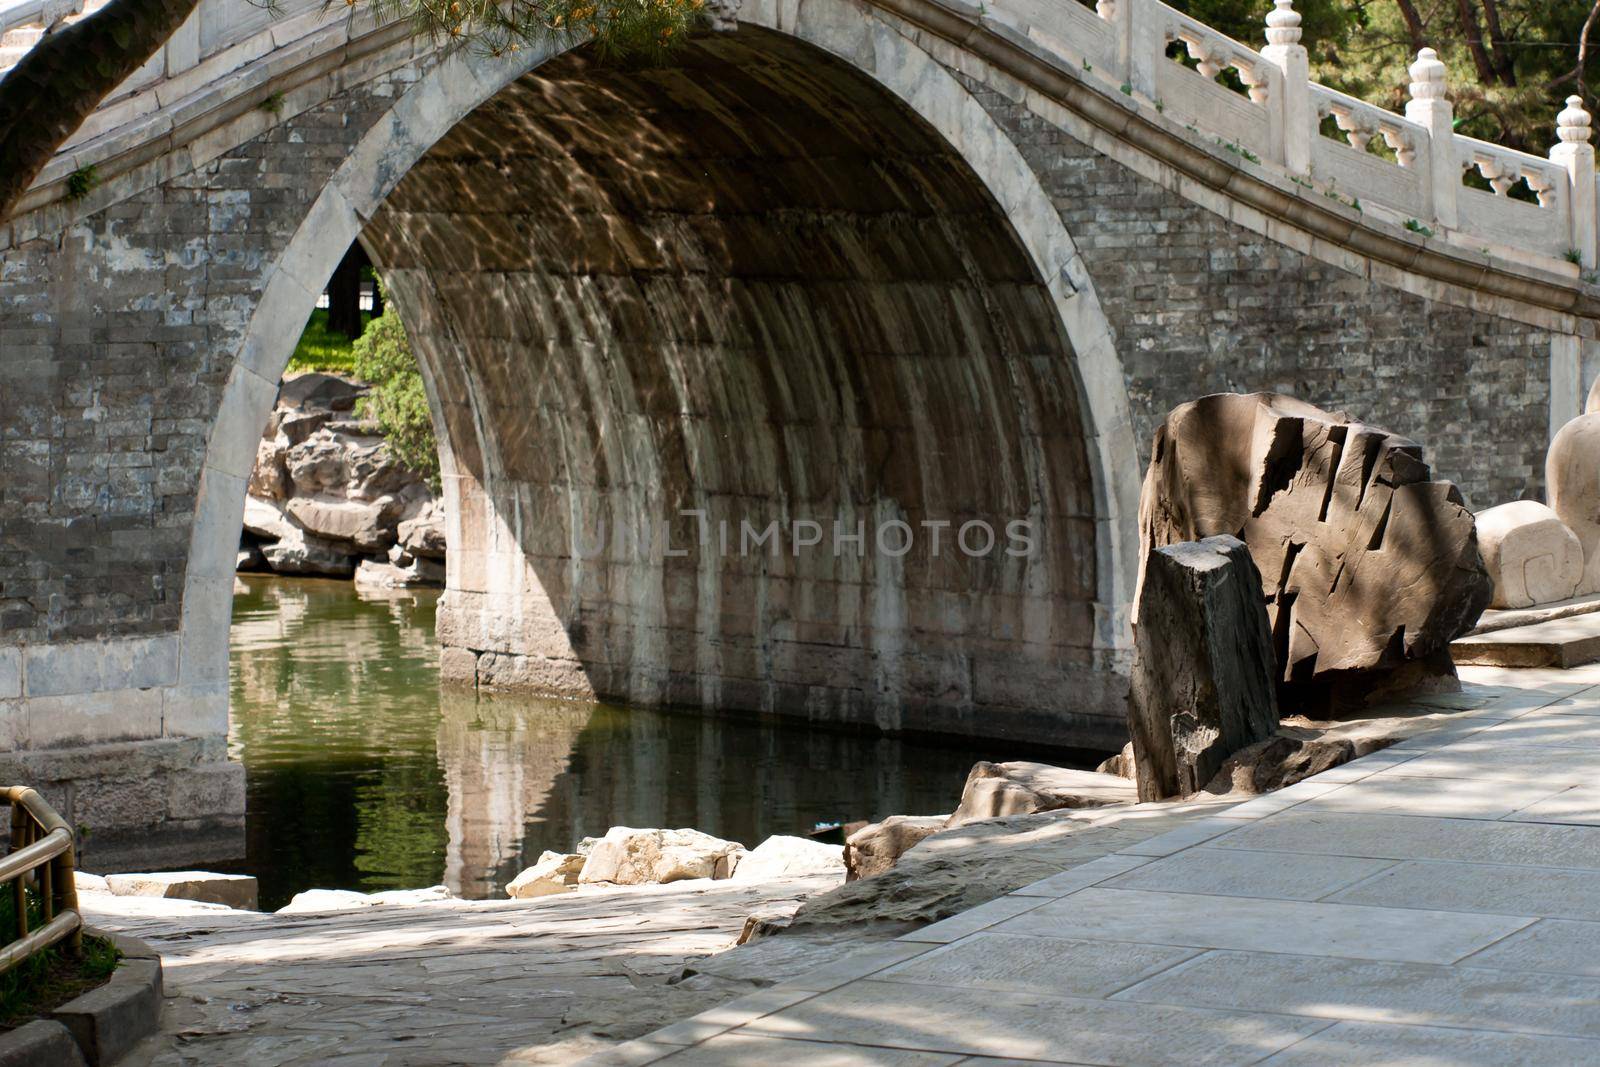 Bridge in Bejings summer palace